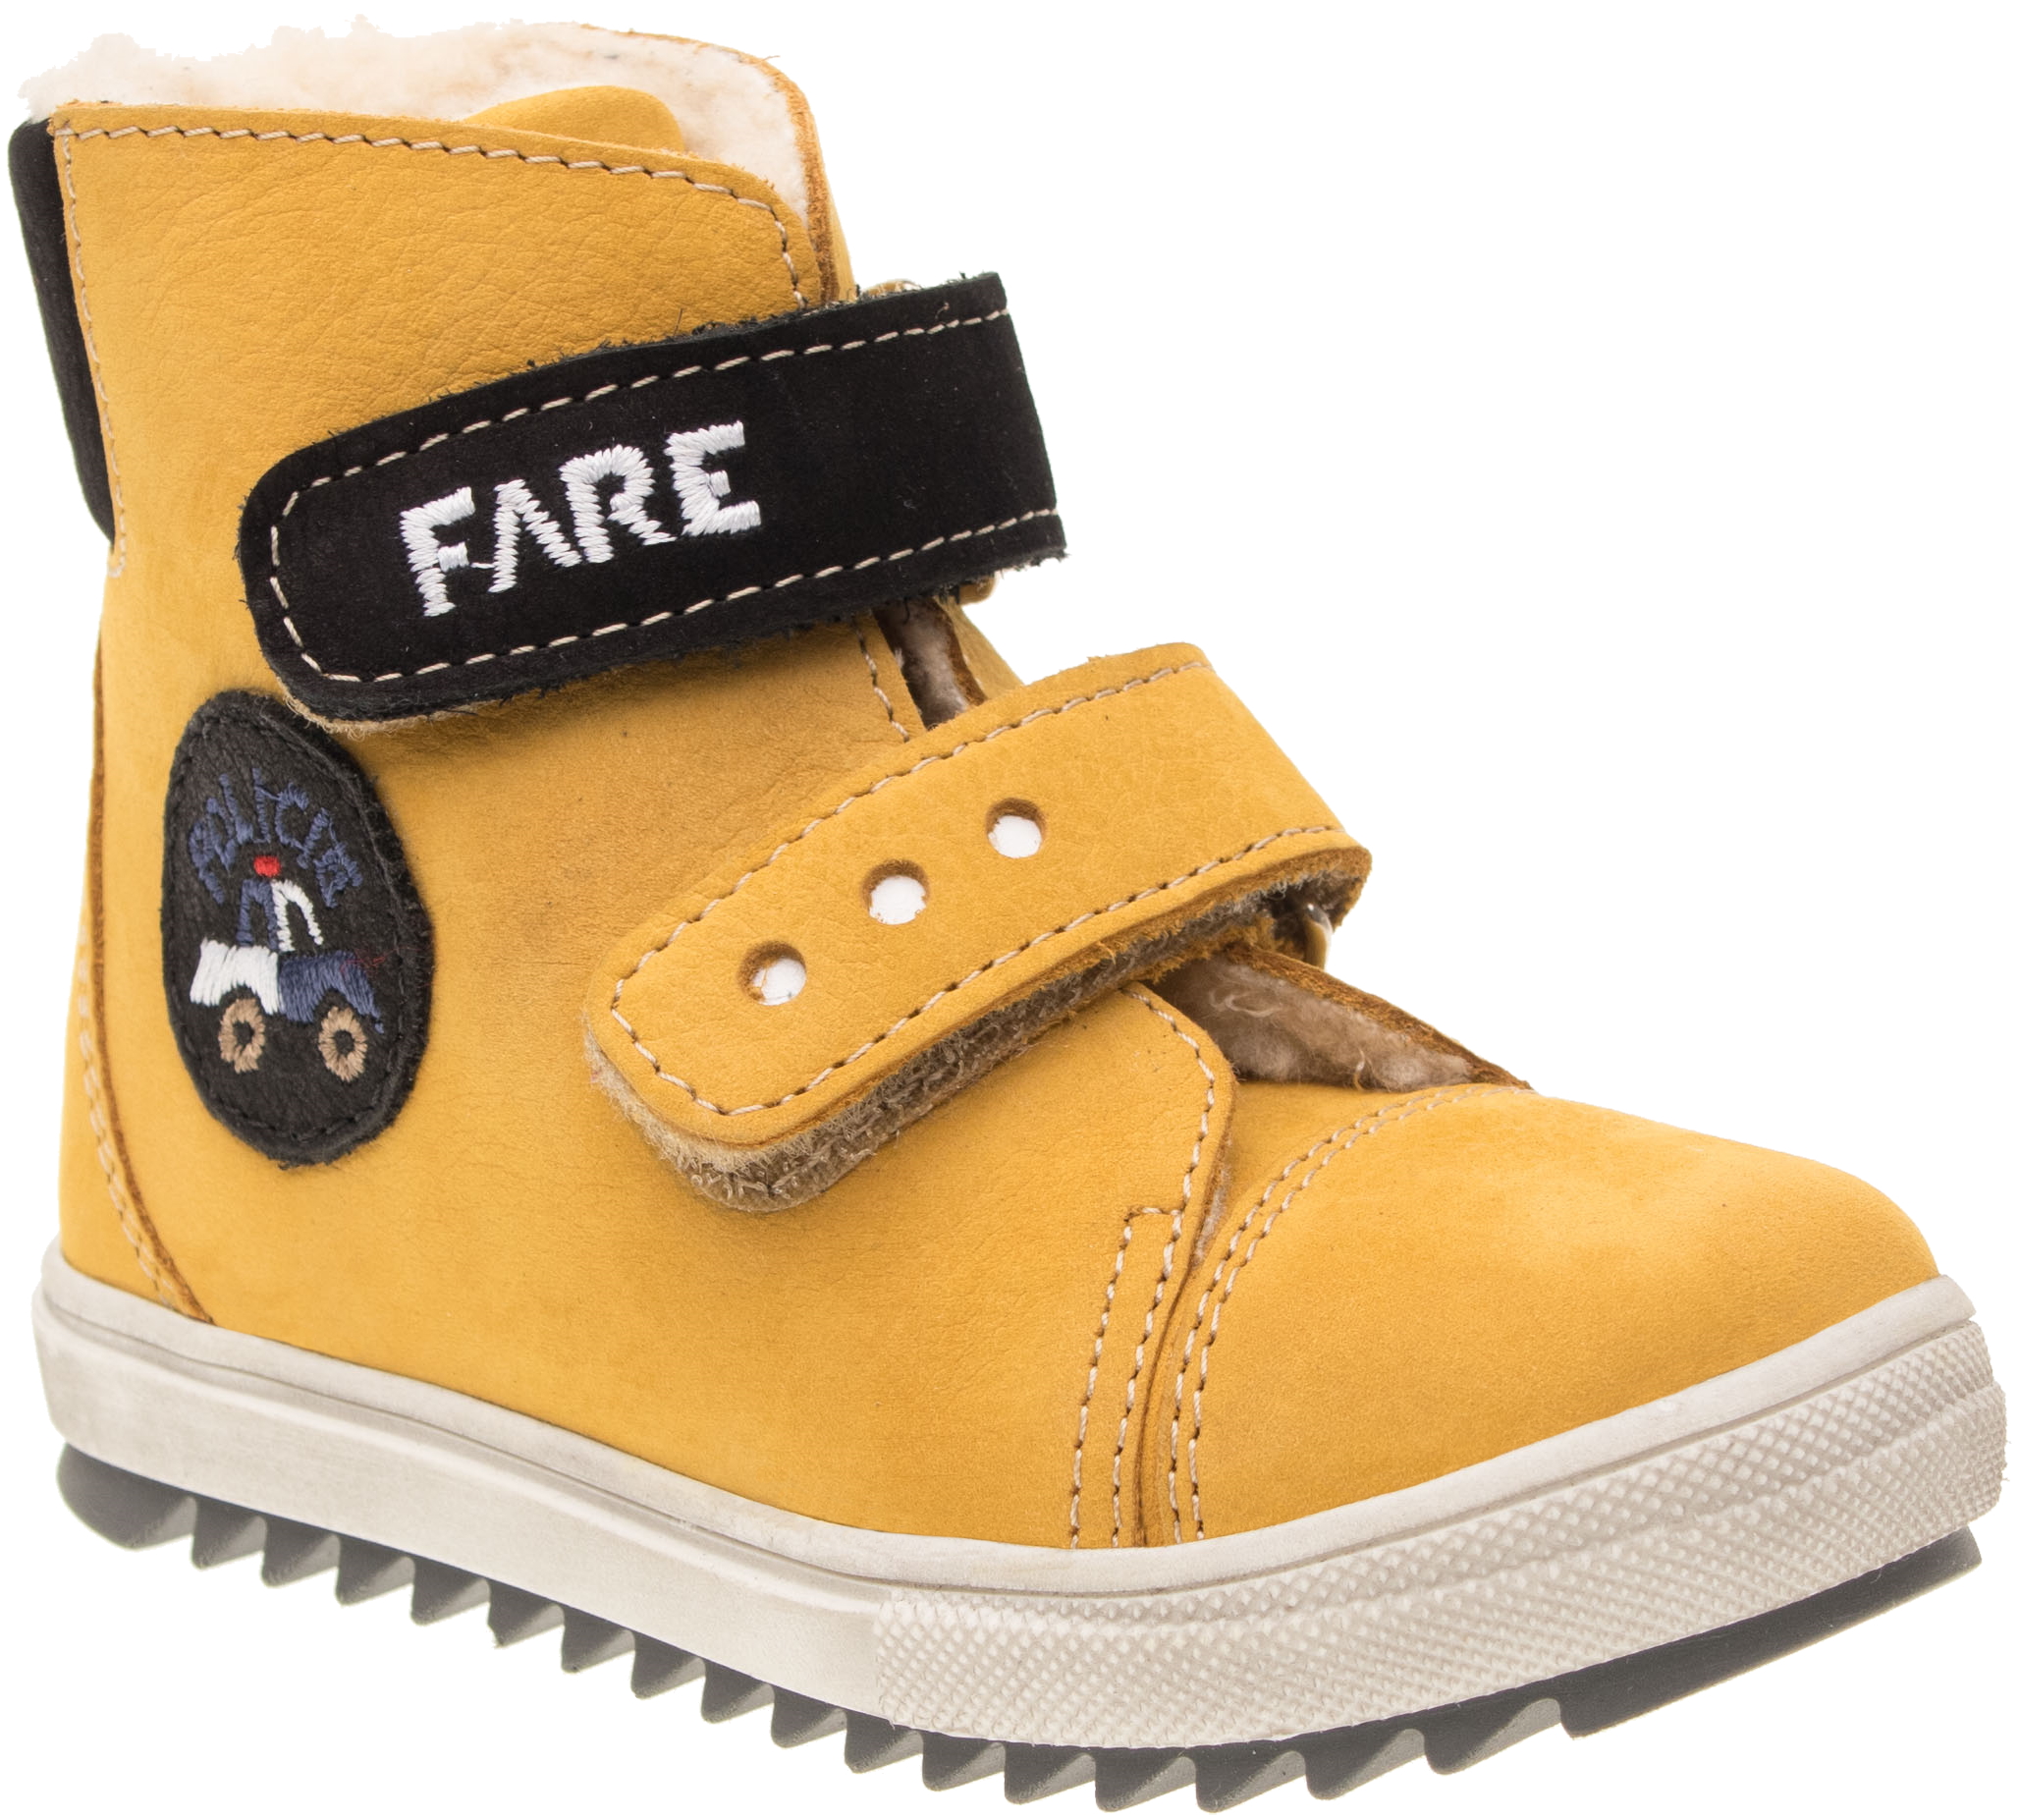 Dětské zimní kotníkové boty Fare 2149282 žluté Velikost: 26 (EU)